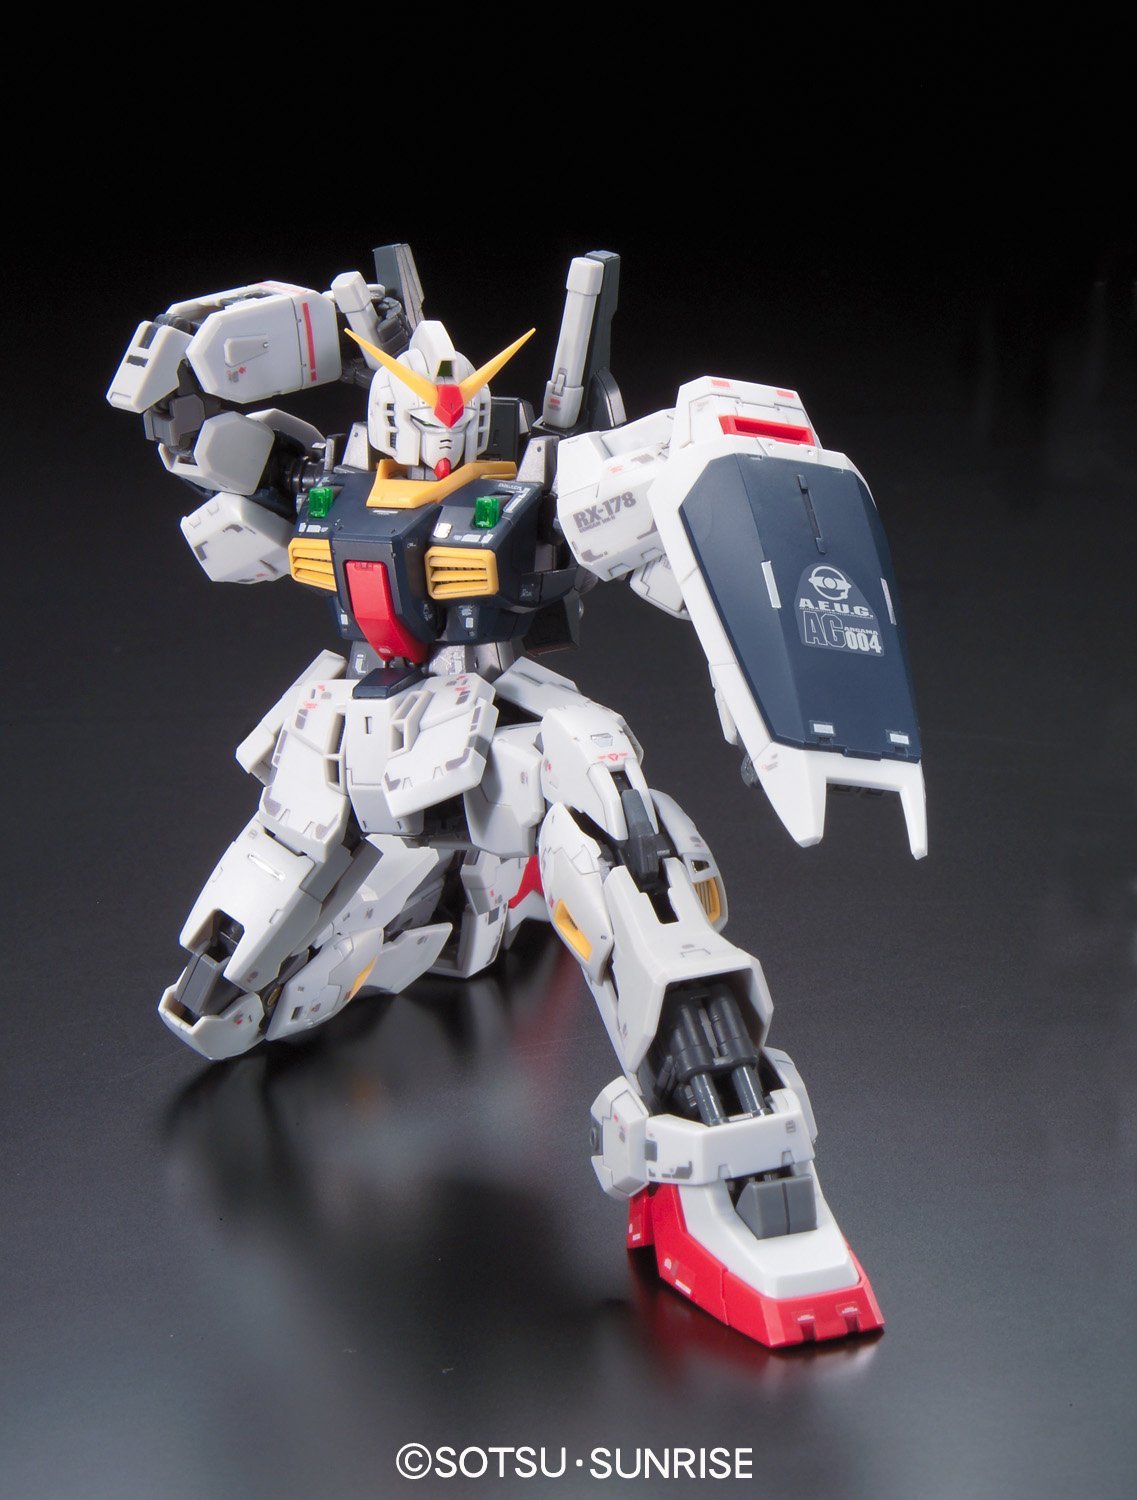 RG - RX-178 Gundam MK-II (AEUG)